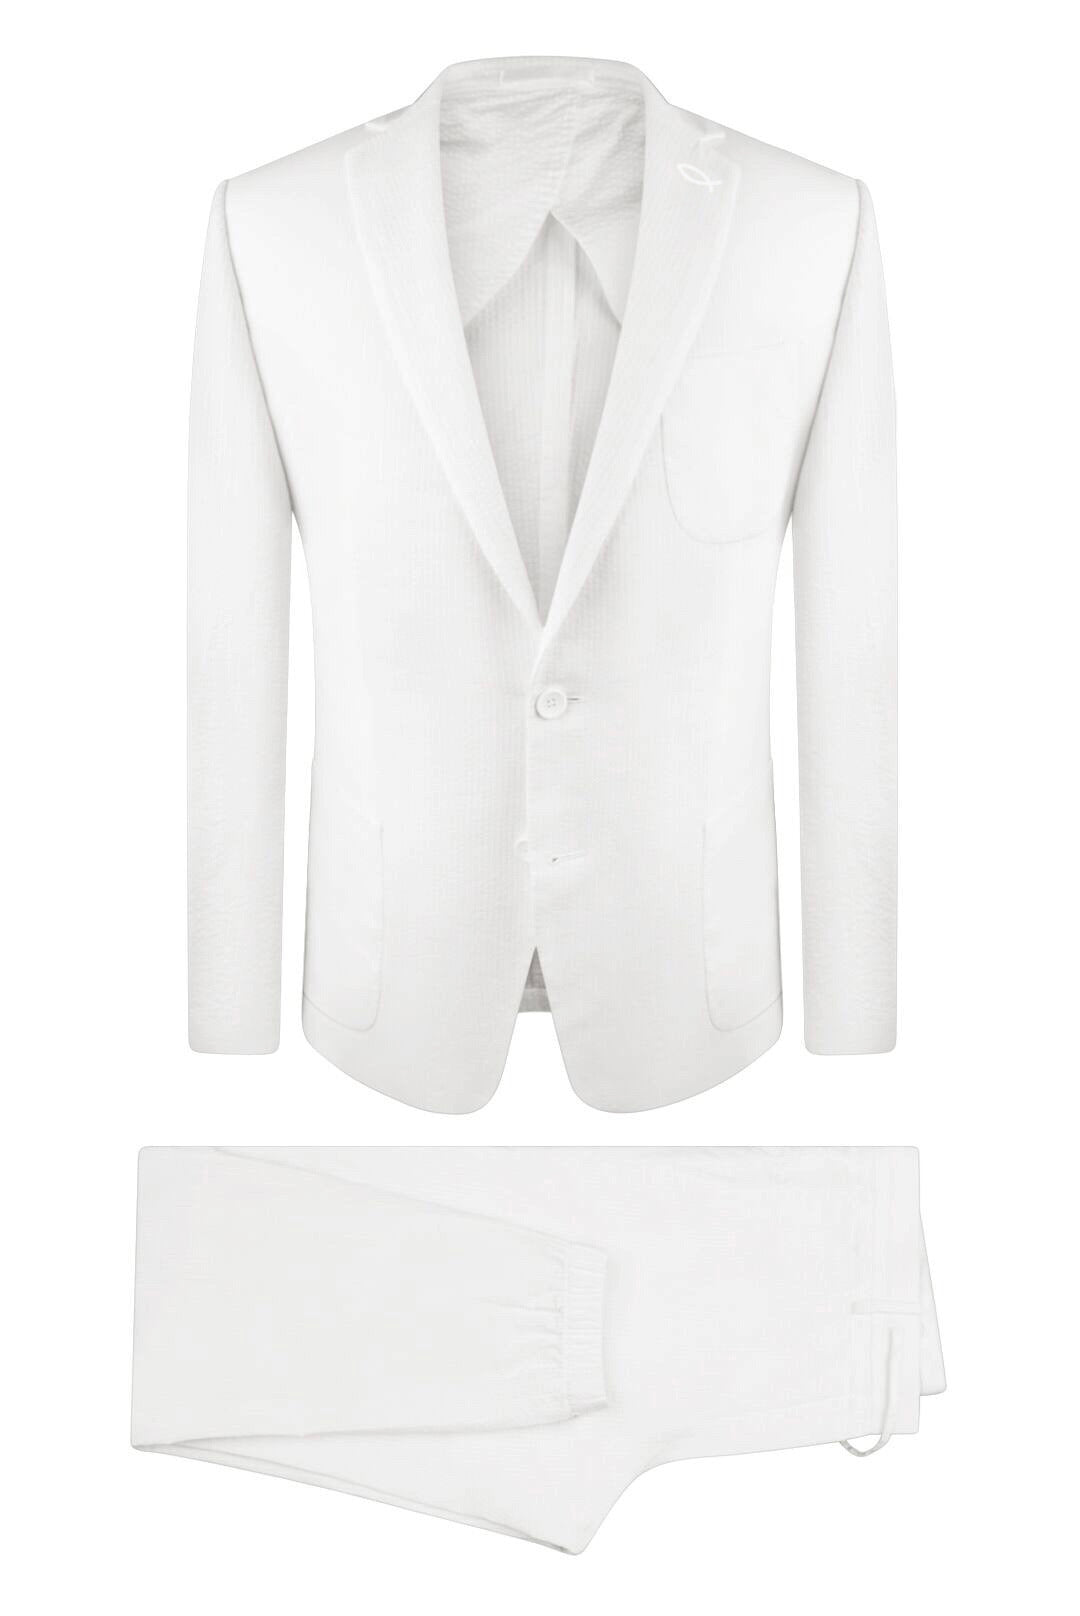 seersucker-shorts-suit-jacket-white-nicholas-kirkwood-beya-pointed